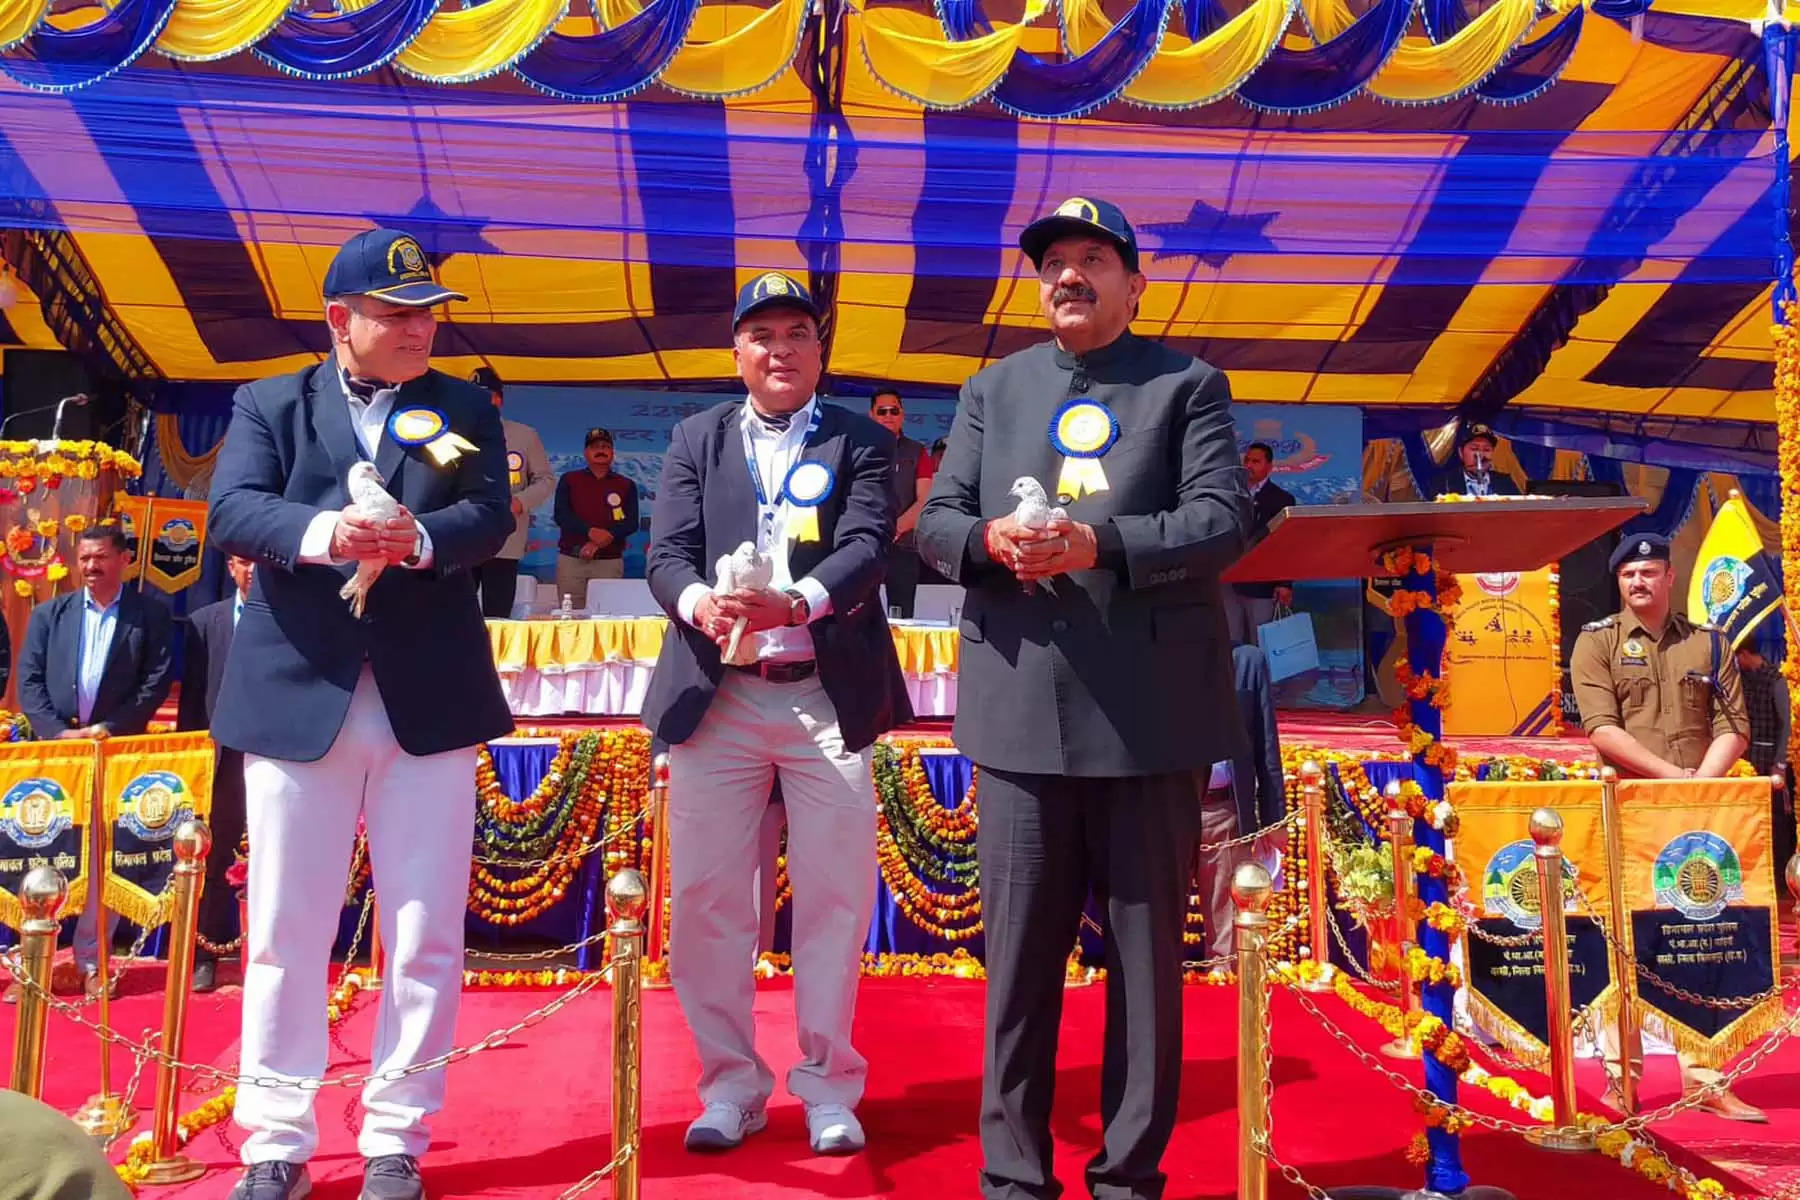 जिला ऊना के कुटलैहड़ विधानसभा क्षेत्र के अंदरौली में वीरवार को 22वीं अखिल भारतीय पुलिस जल क्रीड़ा प्रतियोगिता  (All India Police Water Sports Championship) शुरू हो गई। उपमुख्यमंत्री मुकेश अग्निहोत्री (Dy Cm Mukesh Agnihotri) ने प्रतियोगिता का शुभारंभ किया। मुख्यातिथि मुकेश अग्निहोत्री ने विभिन्न राज्यों से आई टीमों की मार्चपास्ट की सलामी ली। इसके बाद अंदरौली स्थित गोबिंद सागर झील में खिलाड़ियों ने रोइंग पास्ट किया।